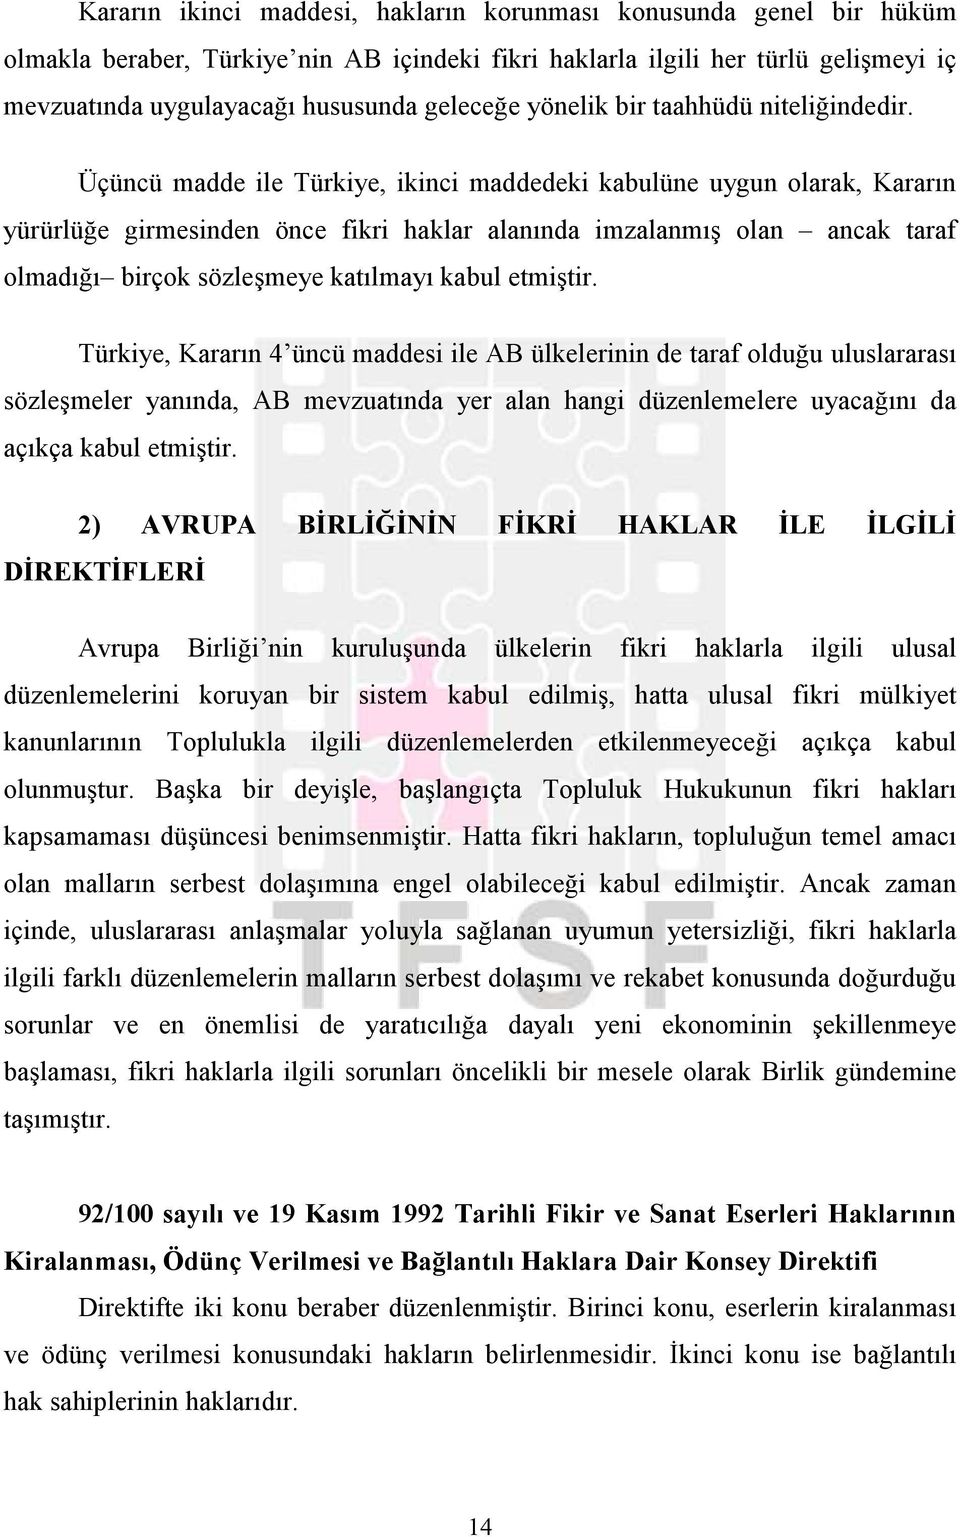 Üçüncü madde ile Türkiye, ikinci maddedeki kabulüne uygun olarak, Kararın yürürlüğe girmesinden önce fikri haklar alanında imzalanmış olan ancak taraf olmadığı birçok sözleşmeye katılmayı kabul